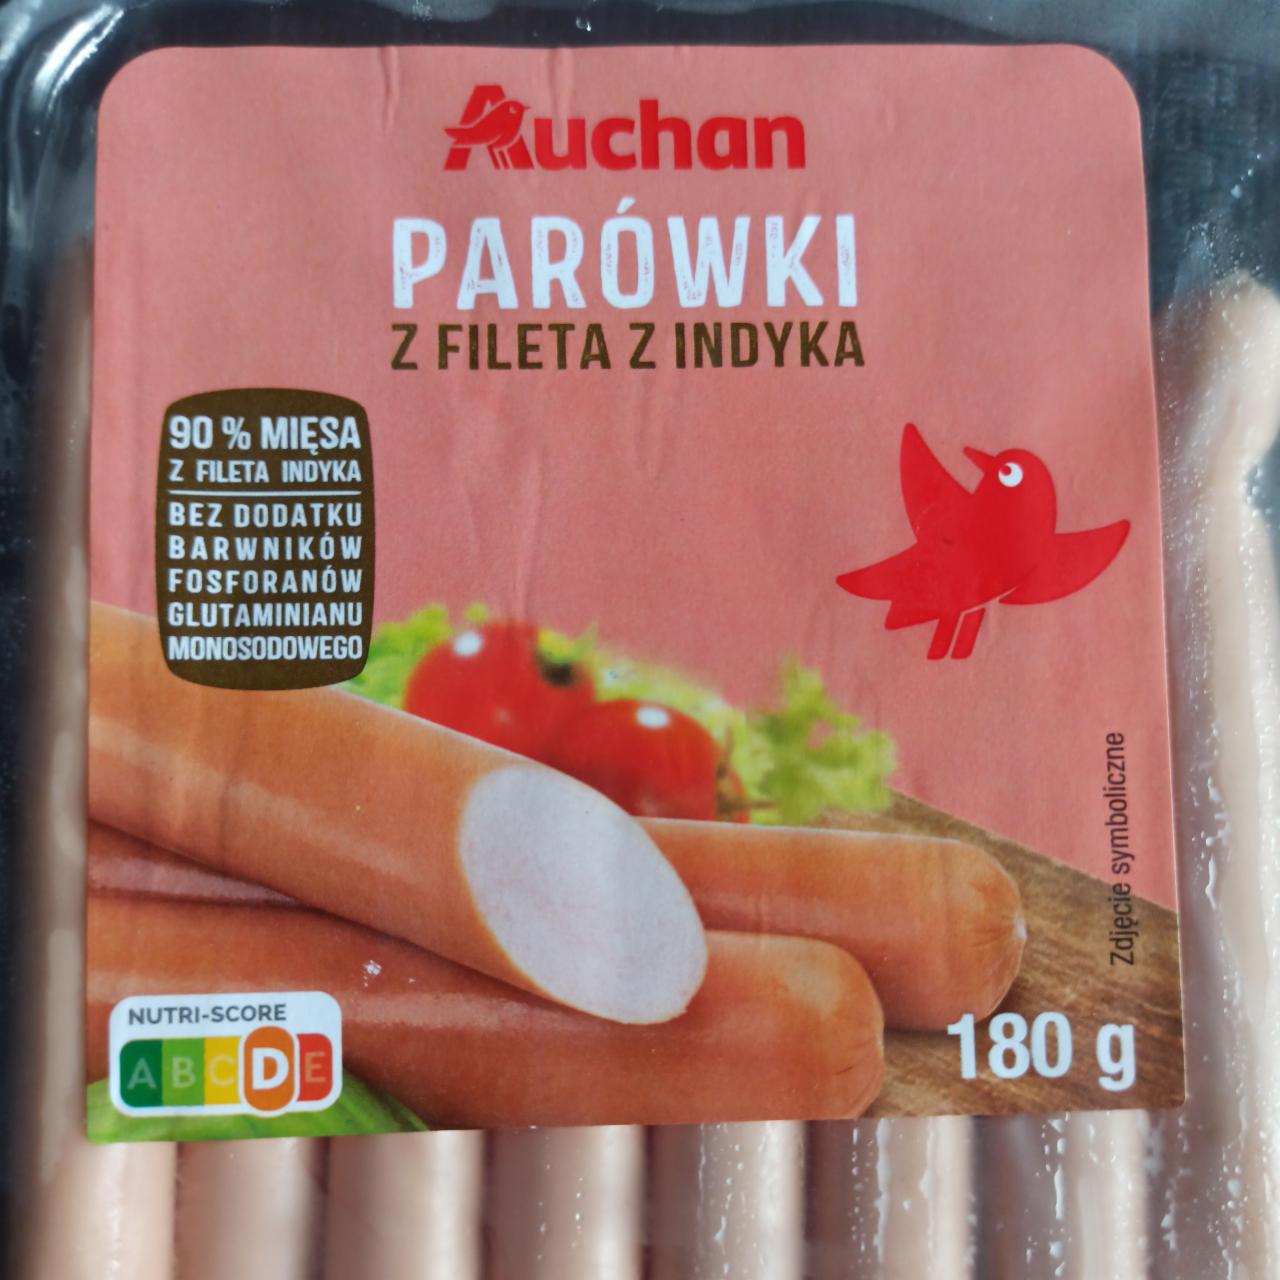 Zdjęcia - Parówki z fileta z indyka Auchan